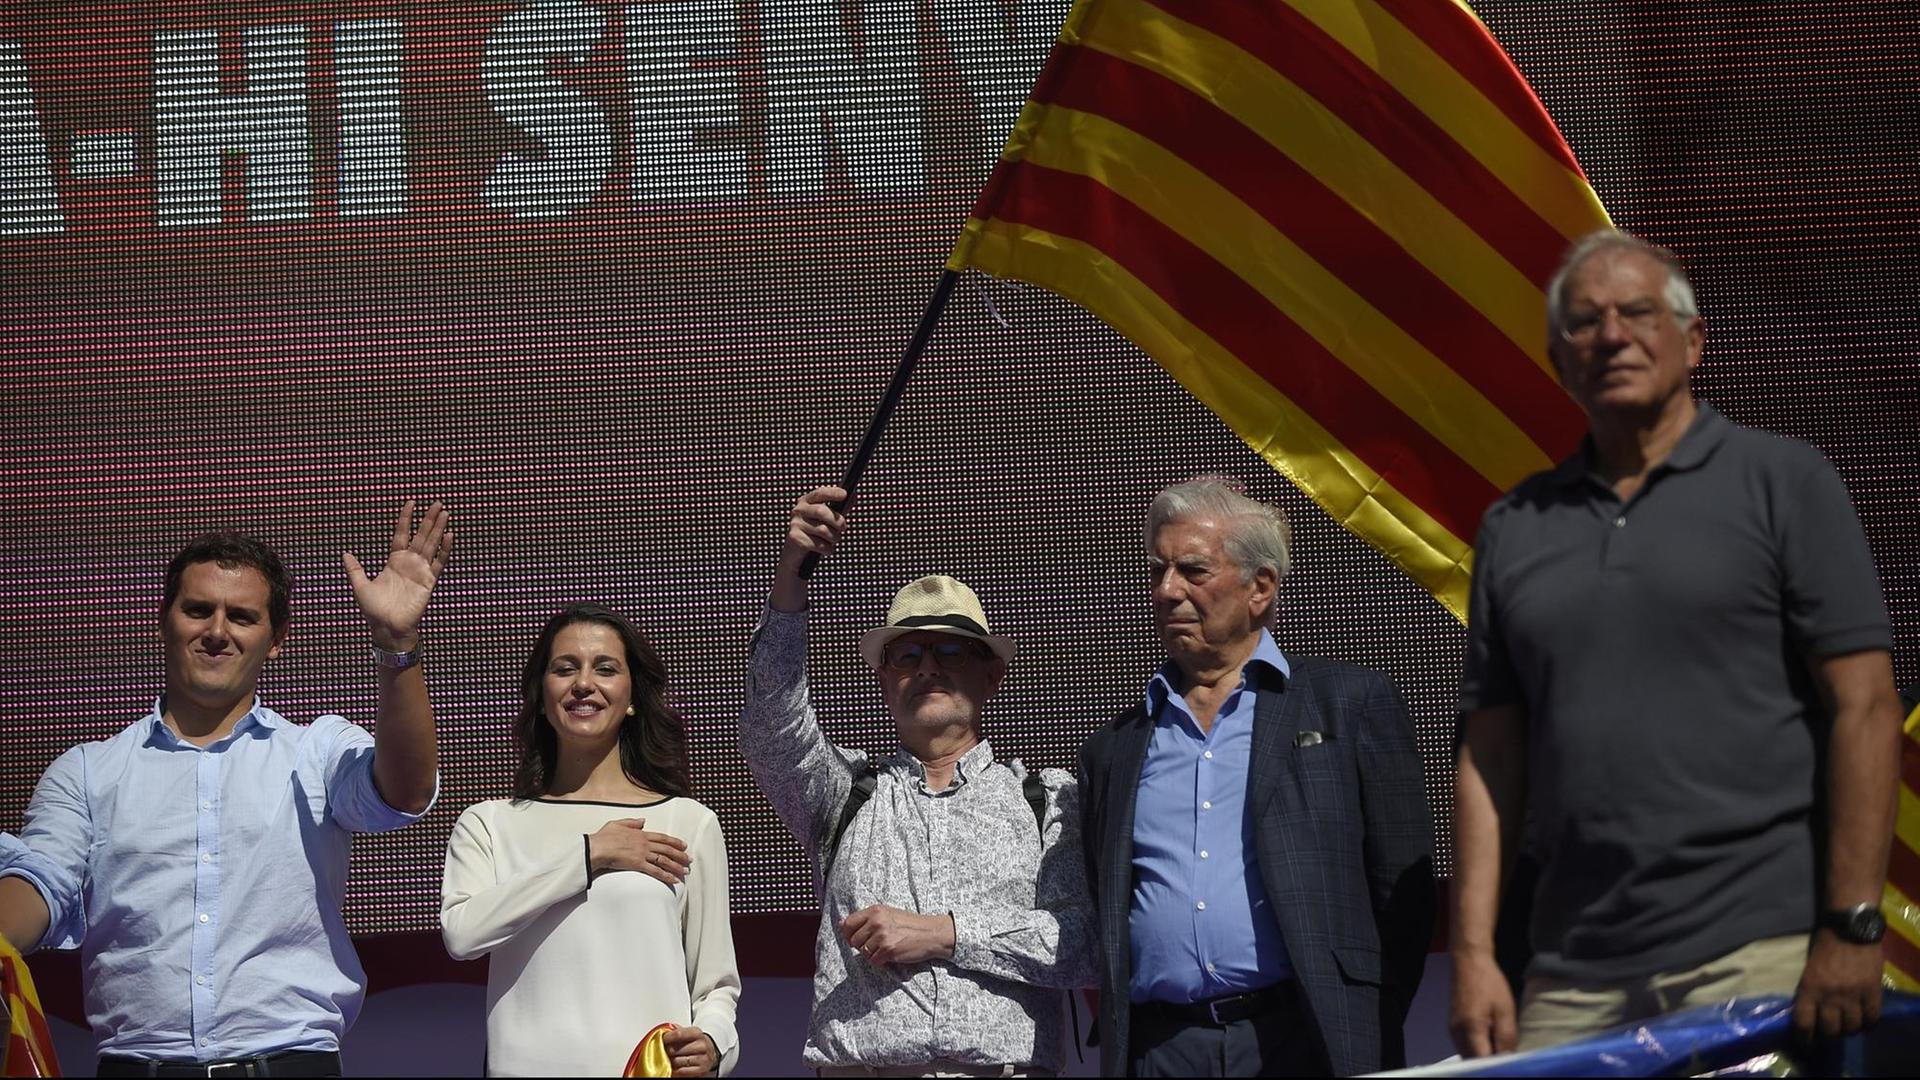 Albert Rivera (Ciudadanos), Ines Arrimadas (PP), Mario Vargas Llosa und Josep Borrell (v.l.n.r.) demonstrieren in Barcelona gegen die Unabhängigkeit Kataloniens.